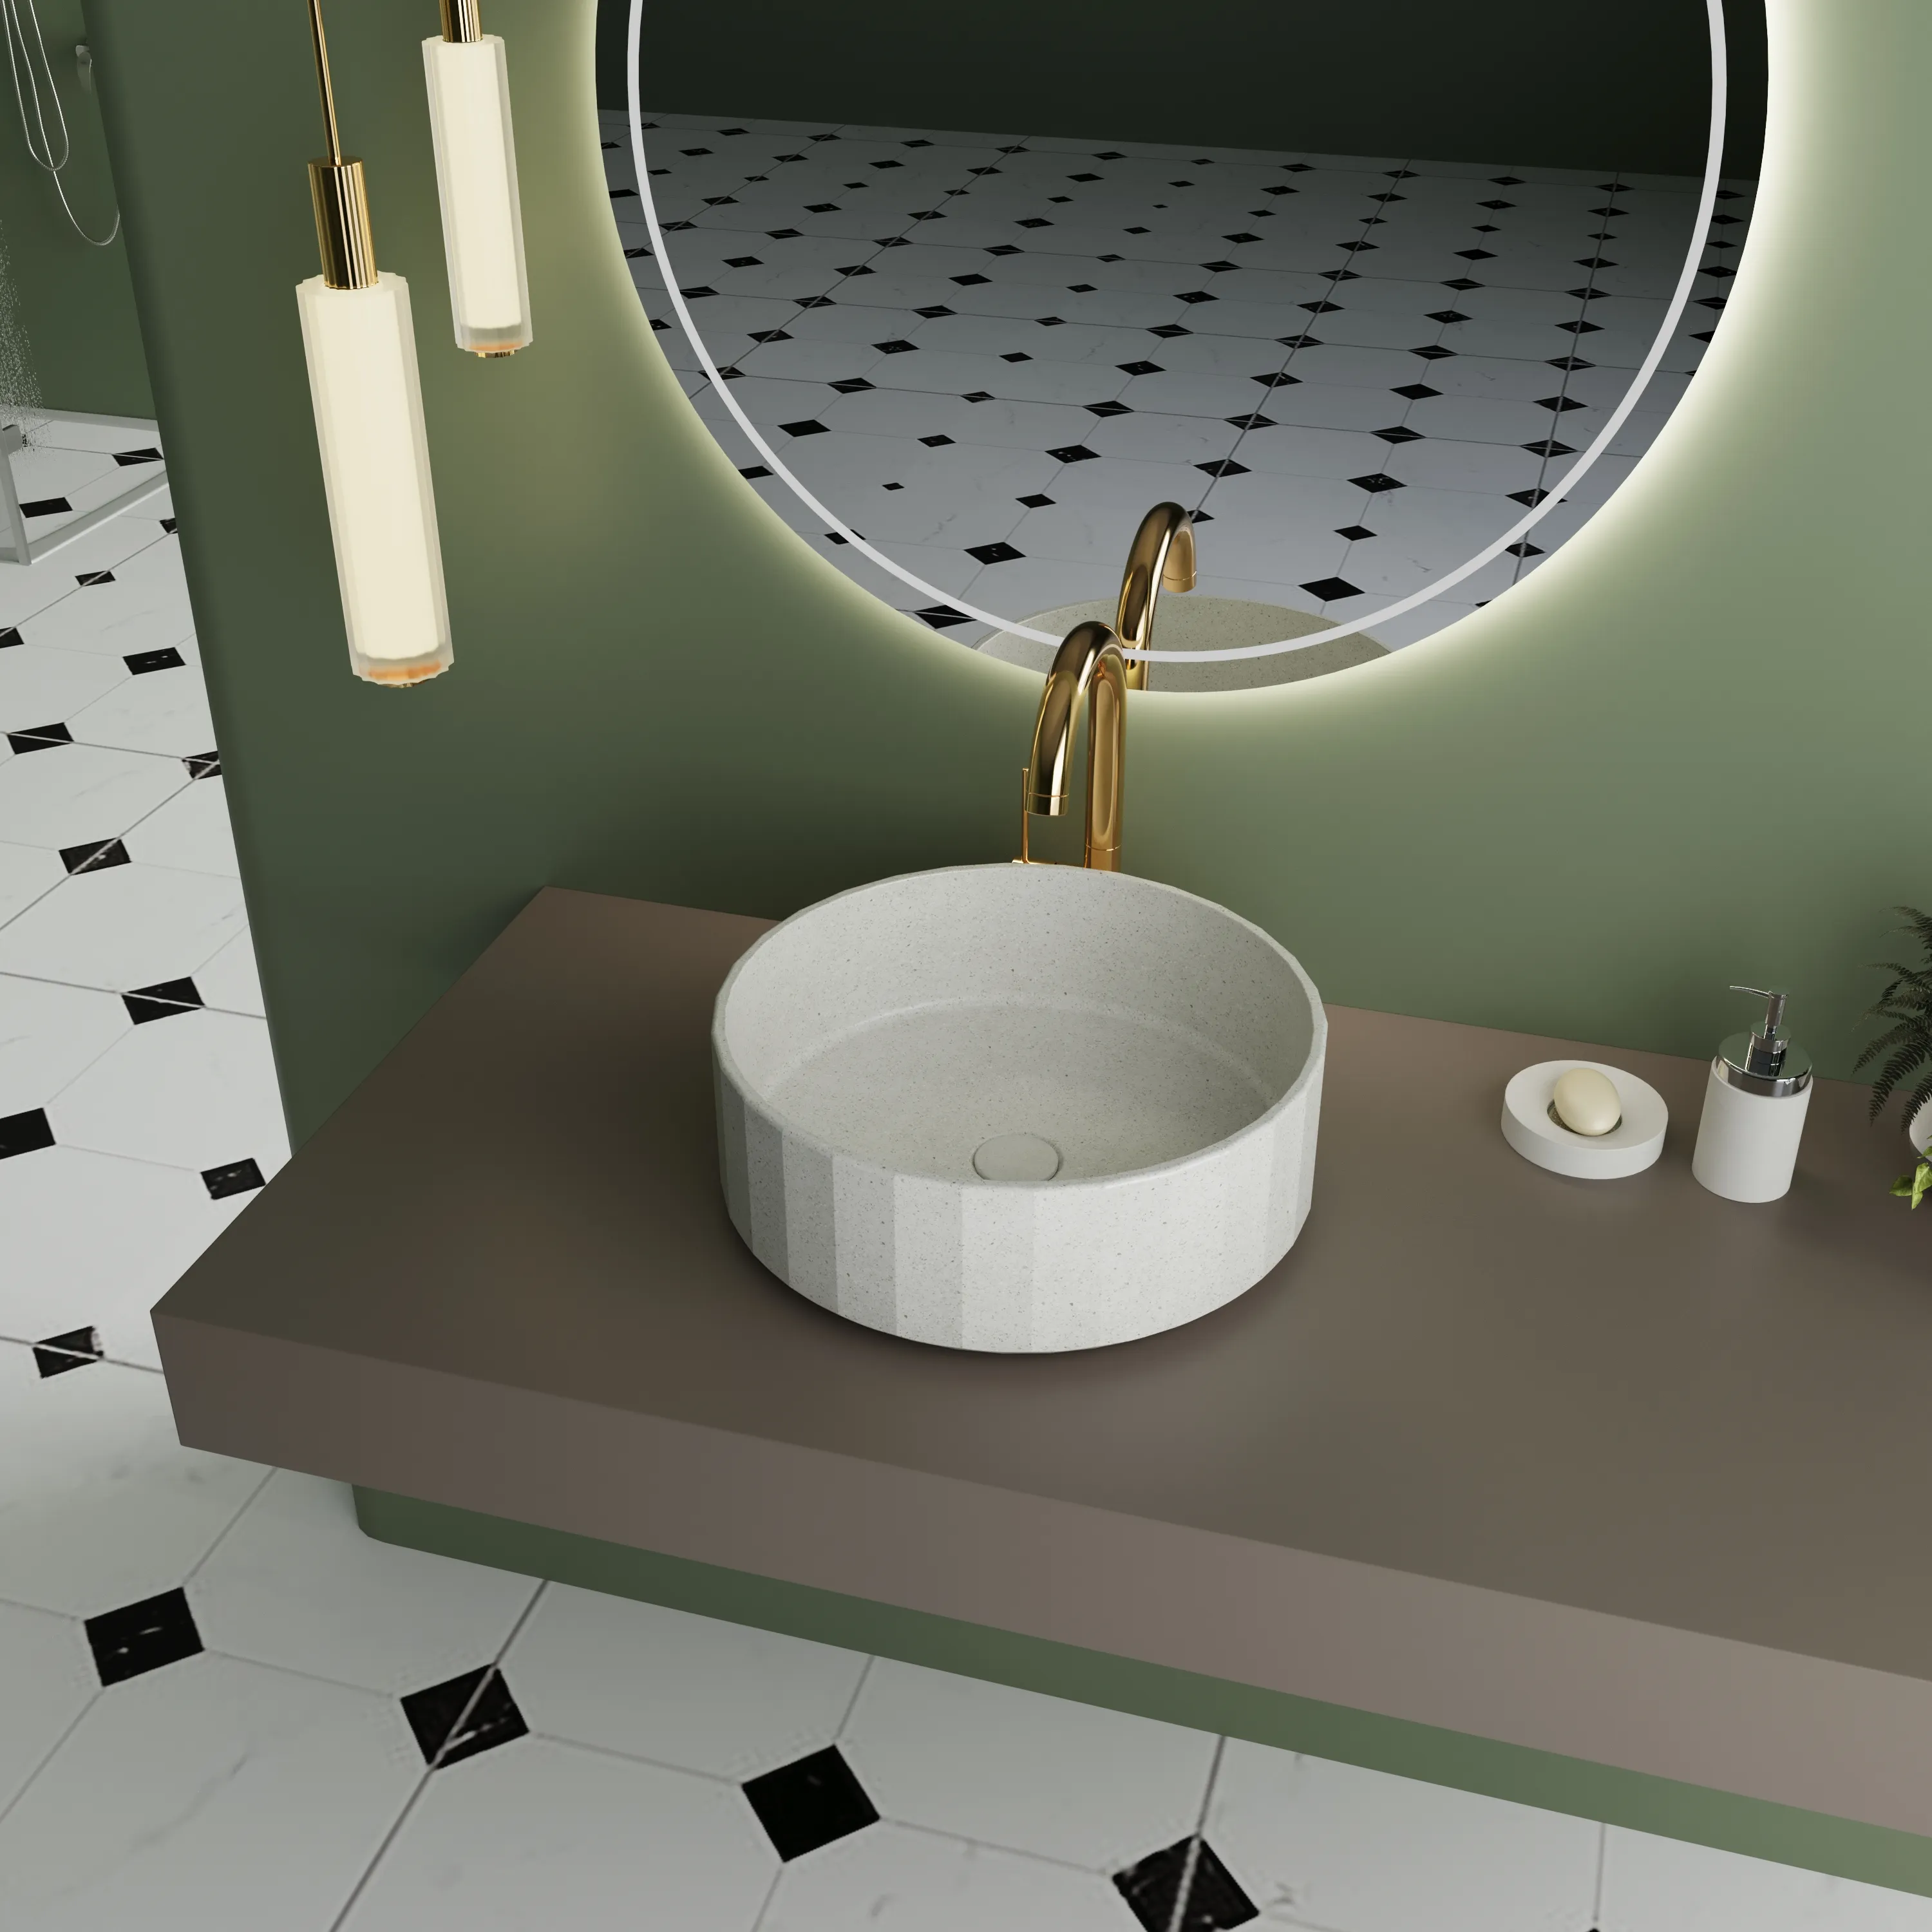 नया उत्पाद आधुनिक बाथरूम बेसिन सीमेंट बाथरूम सिंक वैनिटी काउंटर टॉप हस्तनिर्मित पत्थर रंग गोल कंक्रीट सिंक